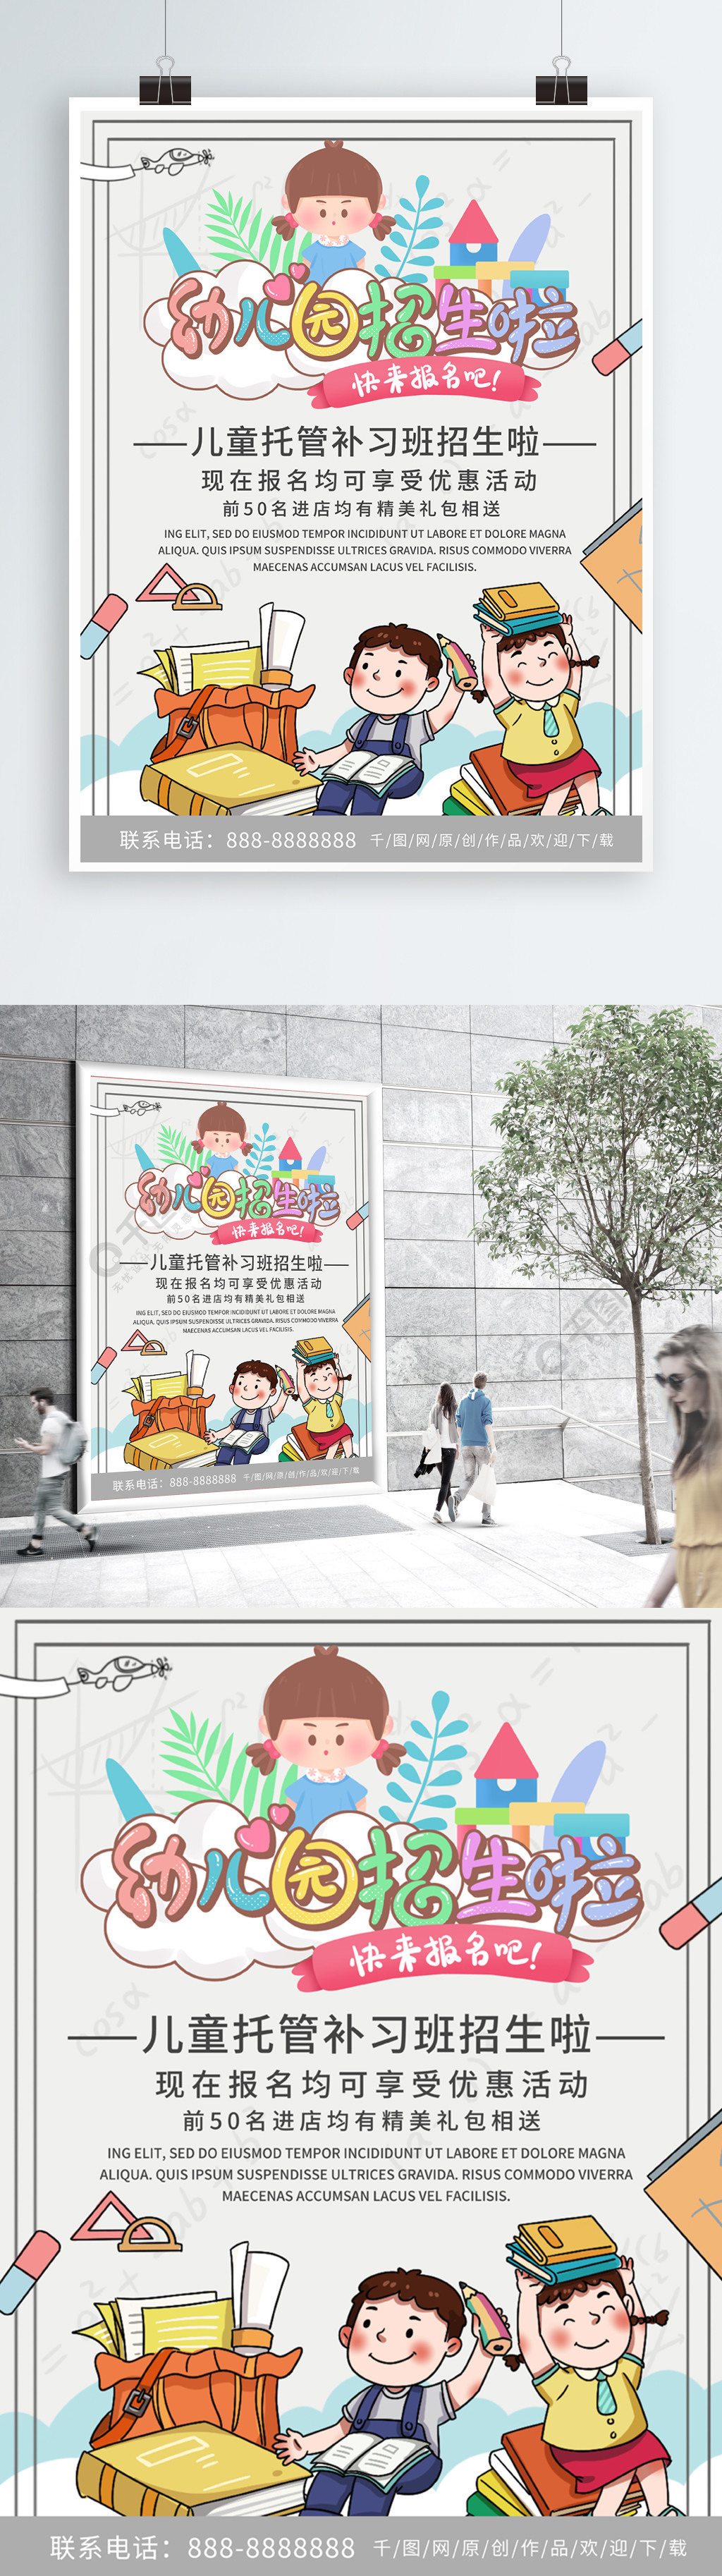 简约清新商务幼儿园招生宣传海报